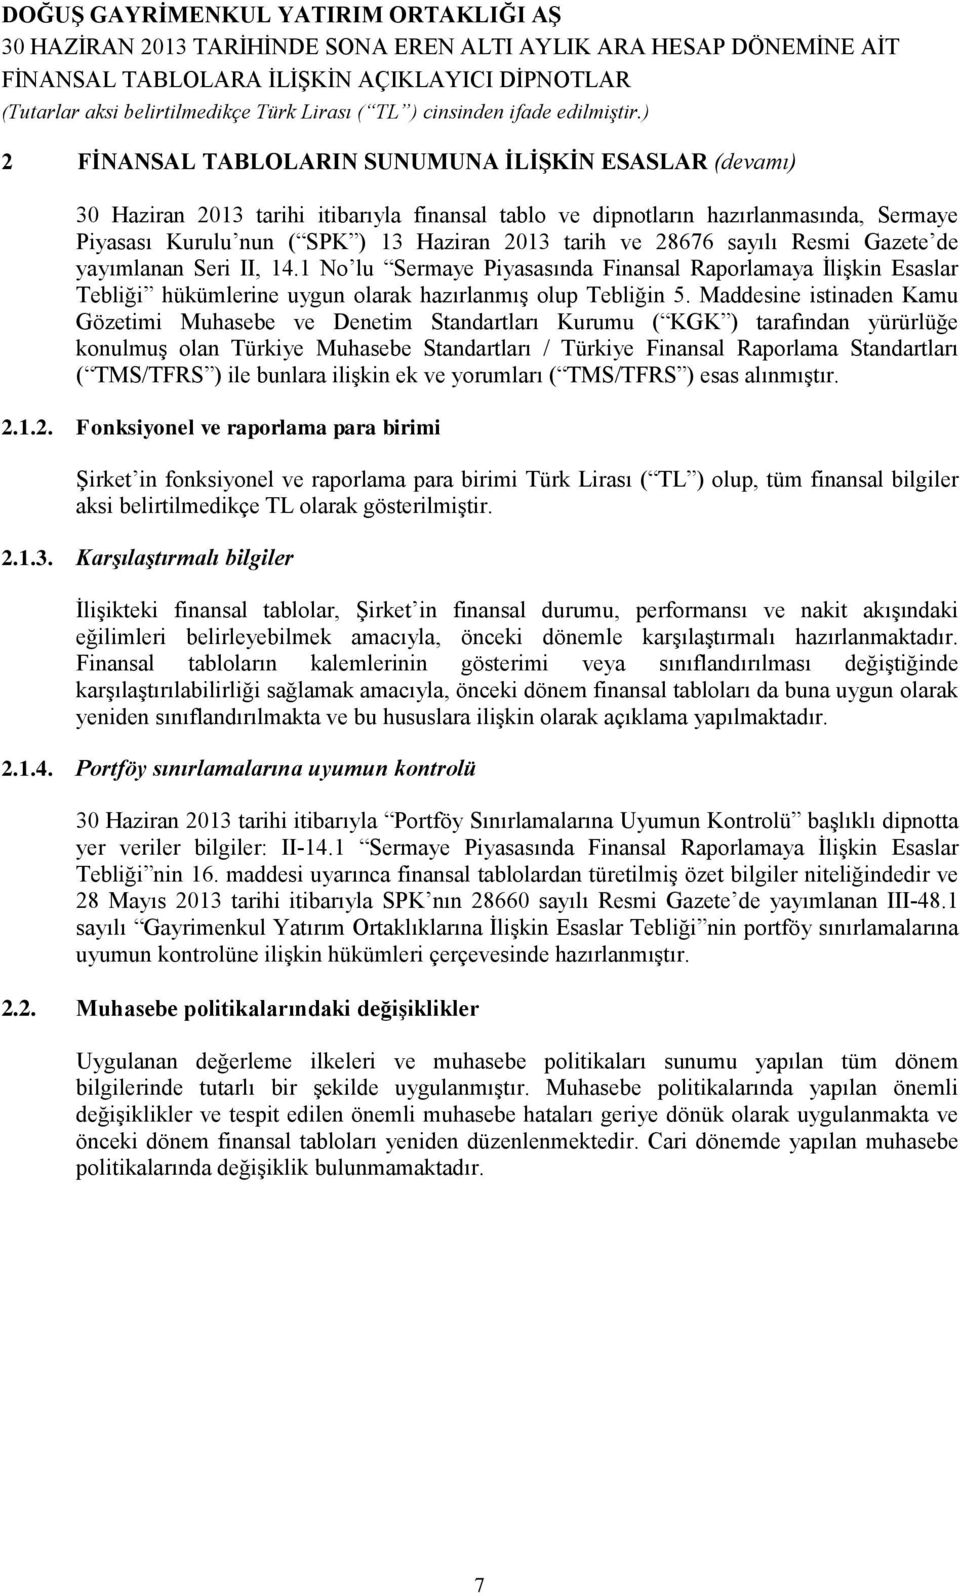 Maddesine istinaden Kamu Gözetimi Muhasebe ve Denetim Standartları Kurumu ( KGK ) tarafından yürürlüğe konulmuş olan Türkiye Muhasebe Standartları / Türkiye Finansal Raporlama Standartları ( TMS/TFRS